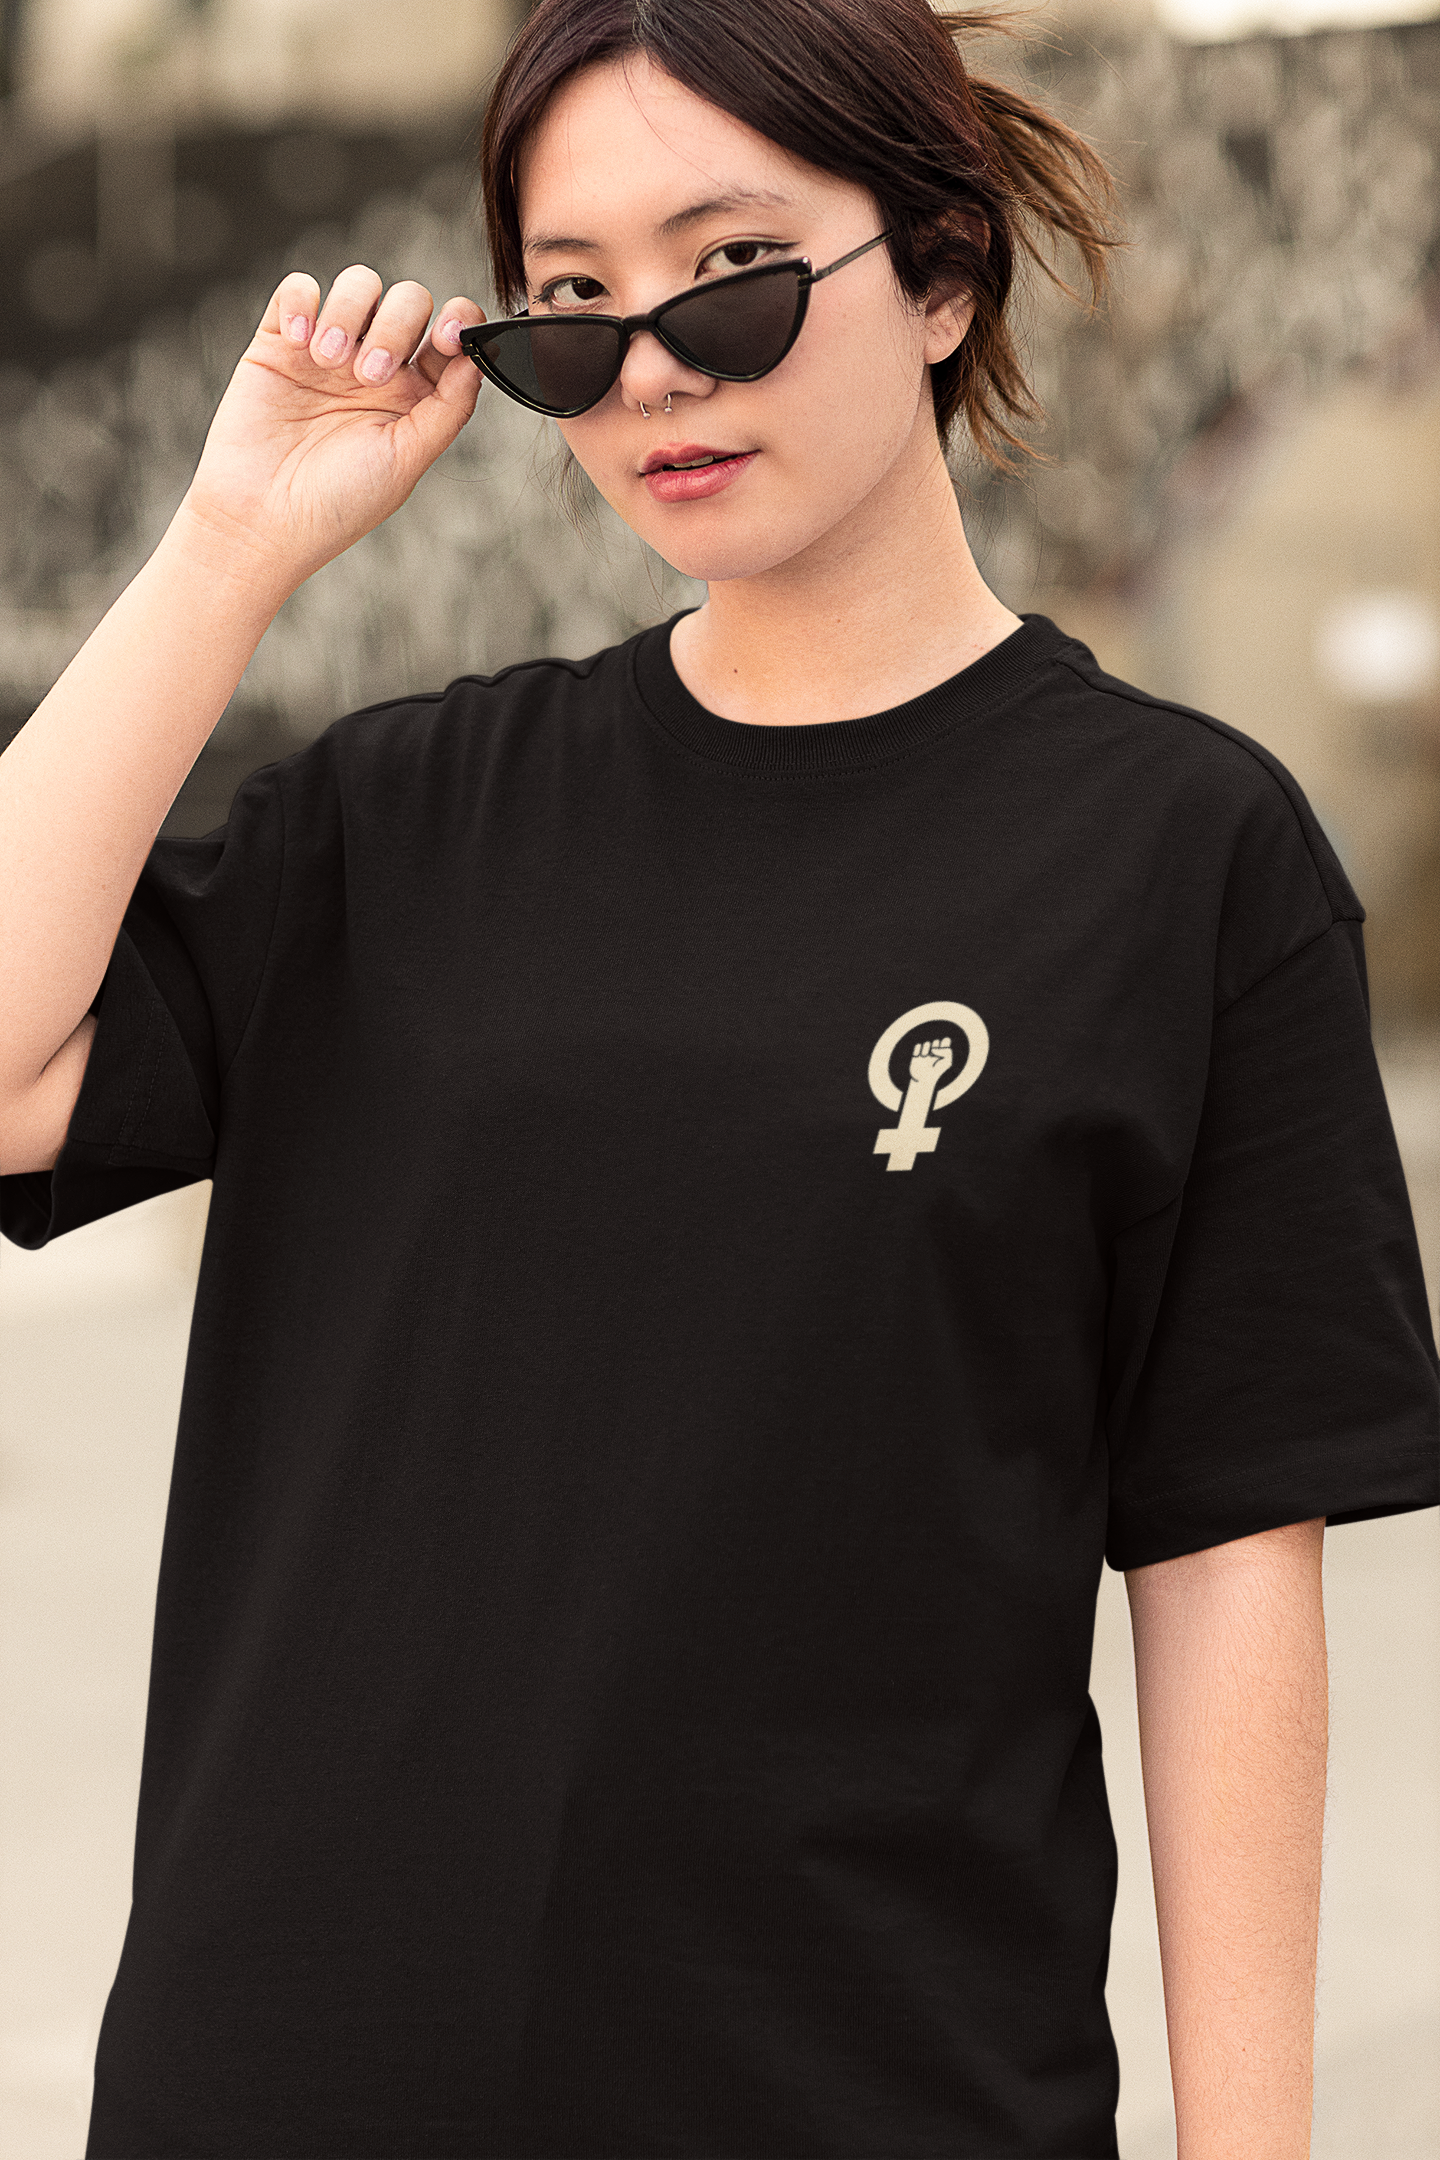 Bilkool Cat Girl Oversized T-Shirt for Women